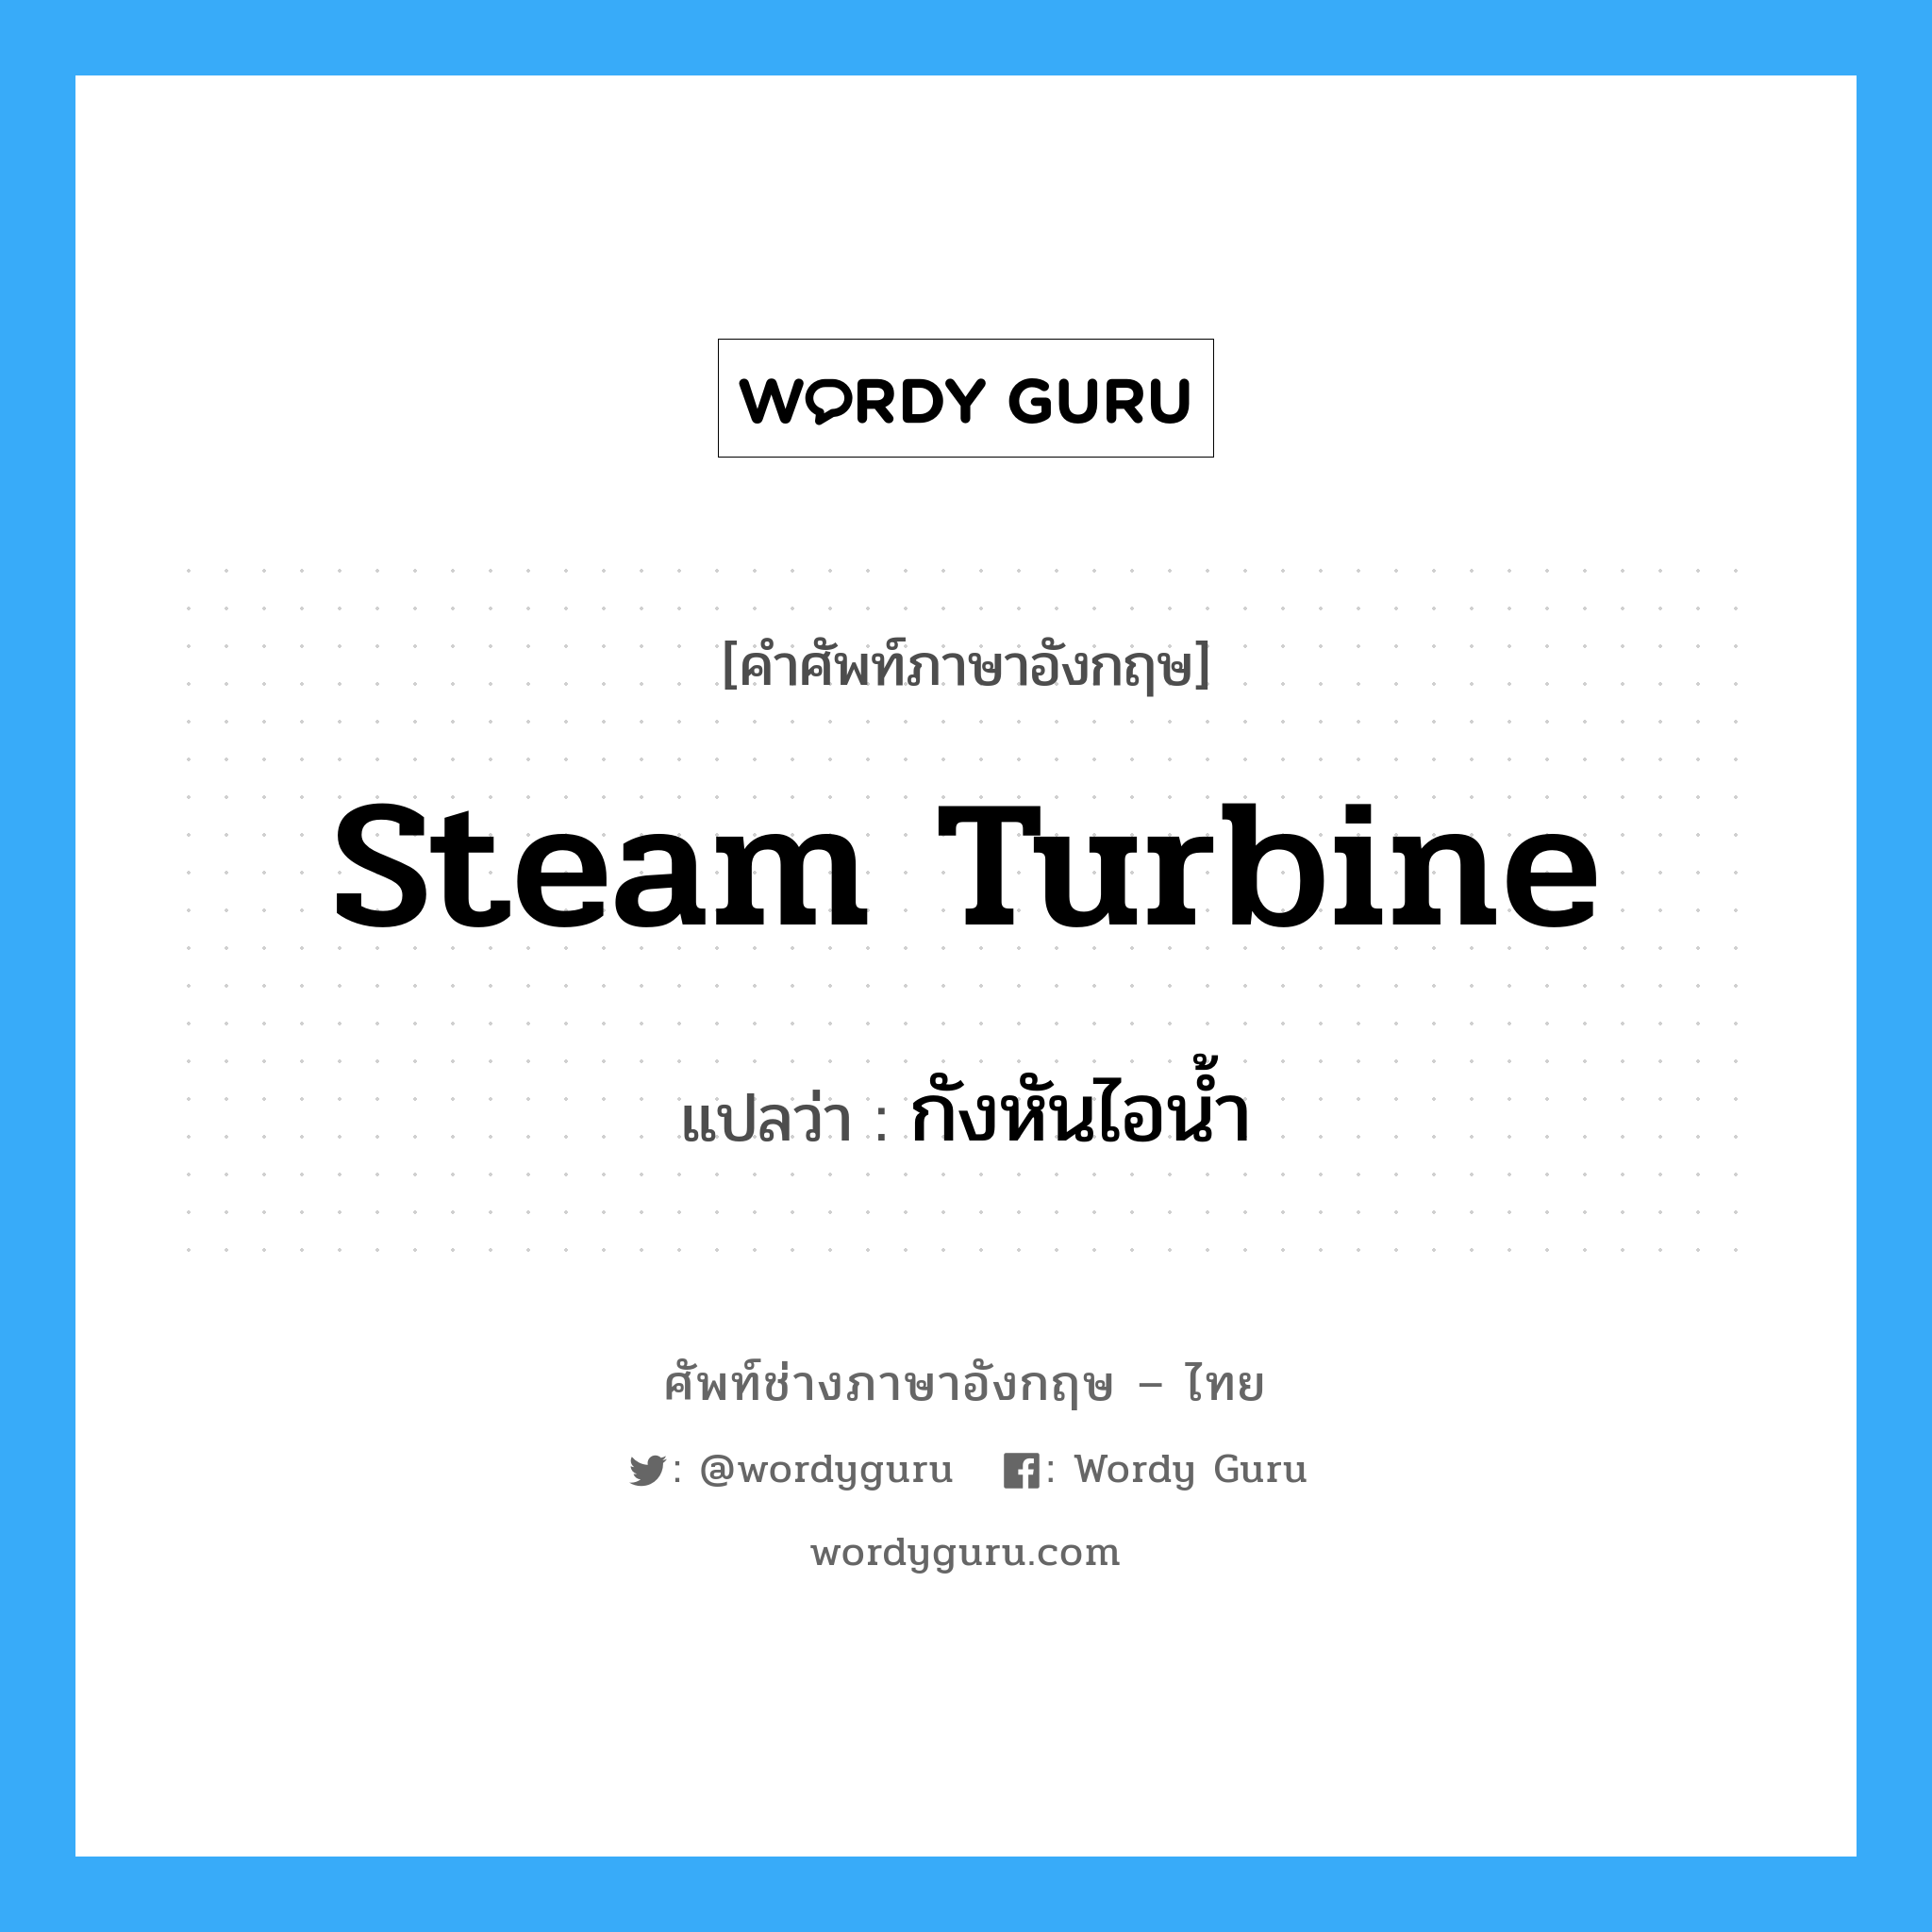 กังหันไอน้ำ ภาษาอังกฤษ?, คำศัพท์ช่างภาษาอังกฤษ - ไทย กังหันไอน้ำ คำศัพท์ภาษาอังกฤษ กังหันไอน้ำ แปลว่า steam turbine